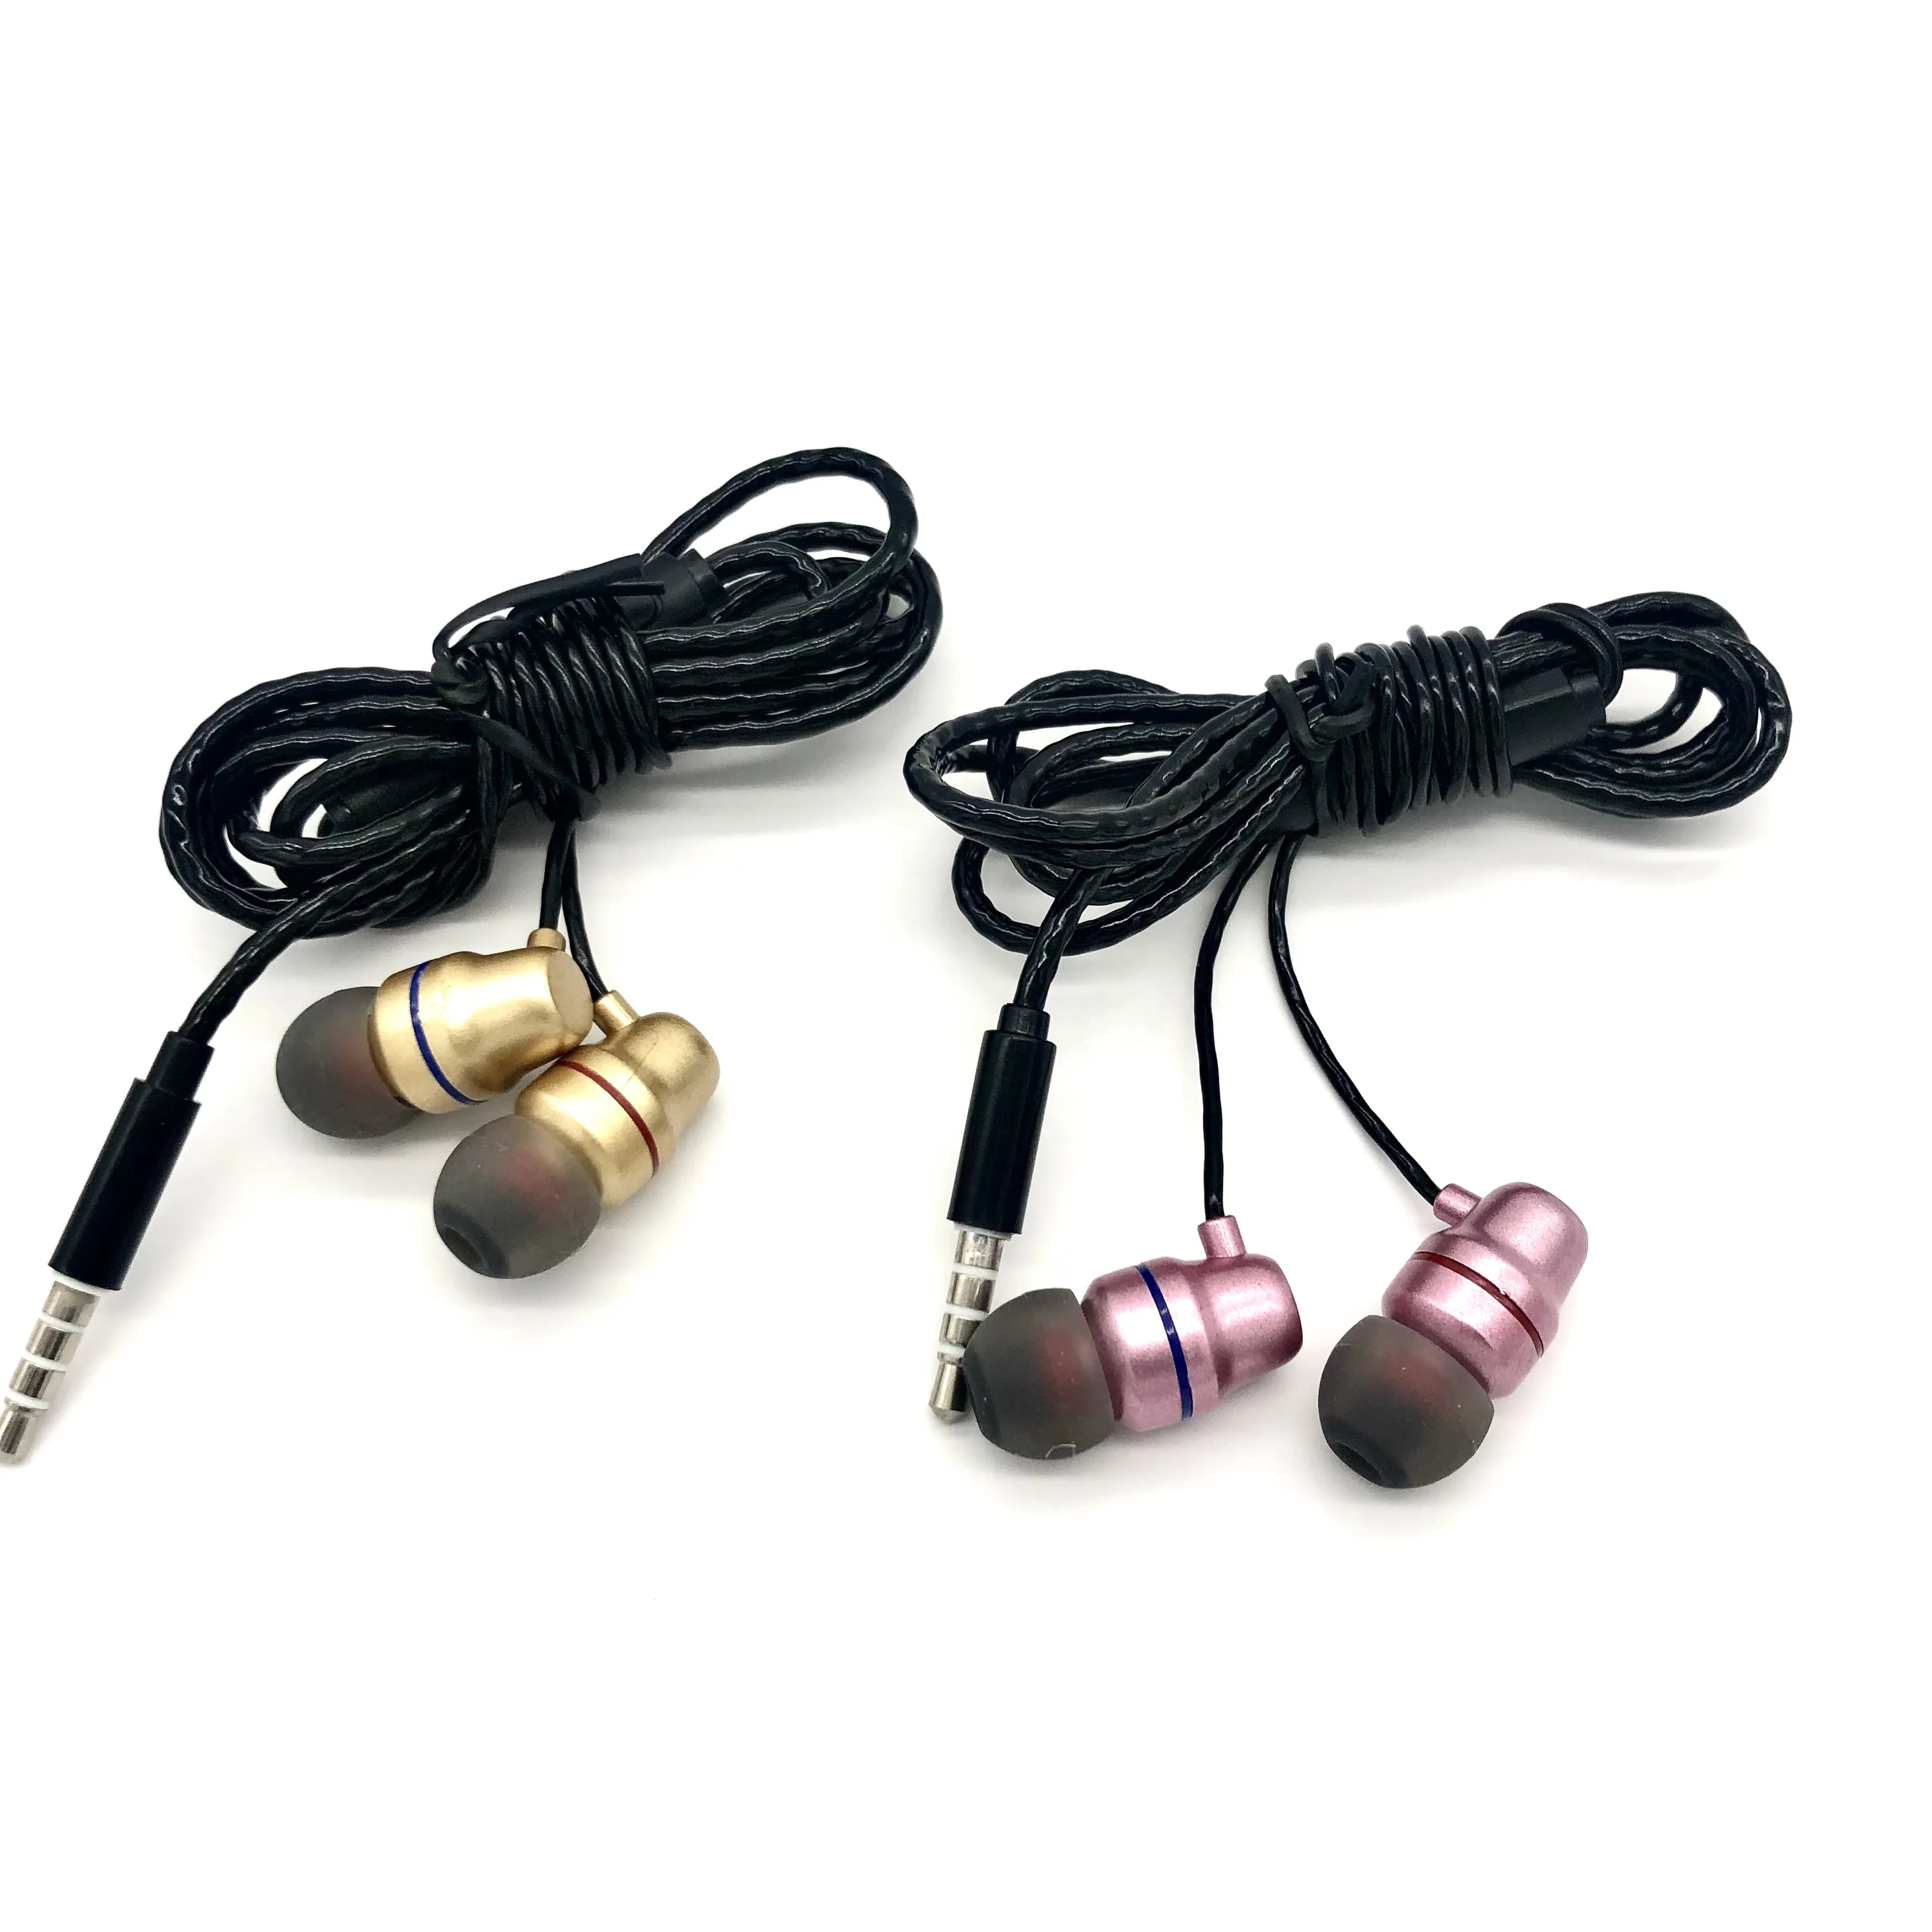 الأصلي OEM جودة سماعة داخل الأذن سماعات الأسطوانة سماعات أذن السلكية في الأذن مع ميكروفون